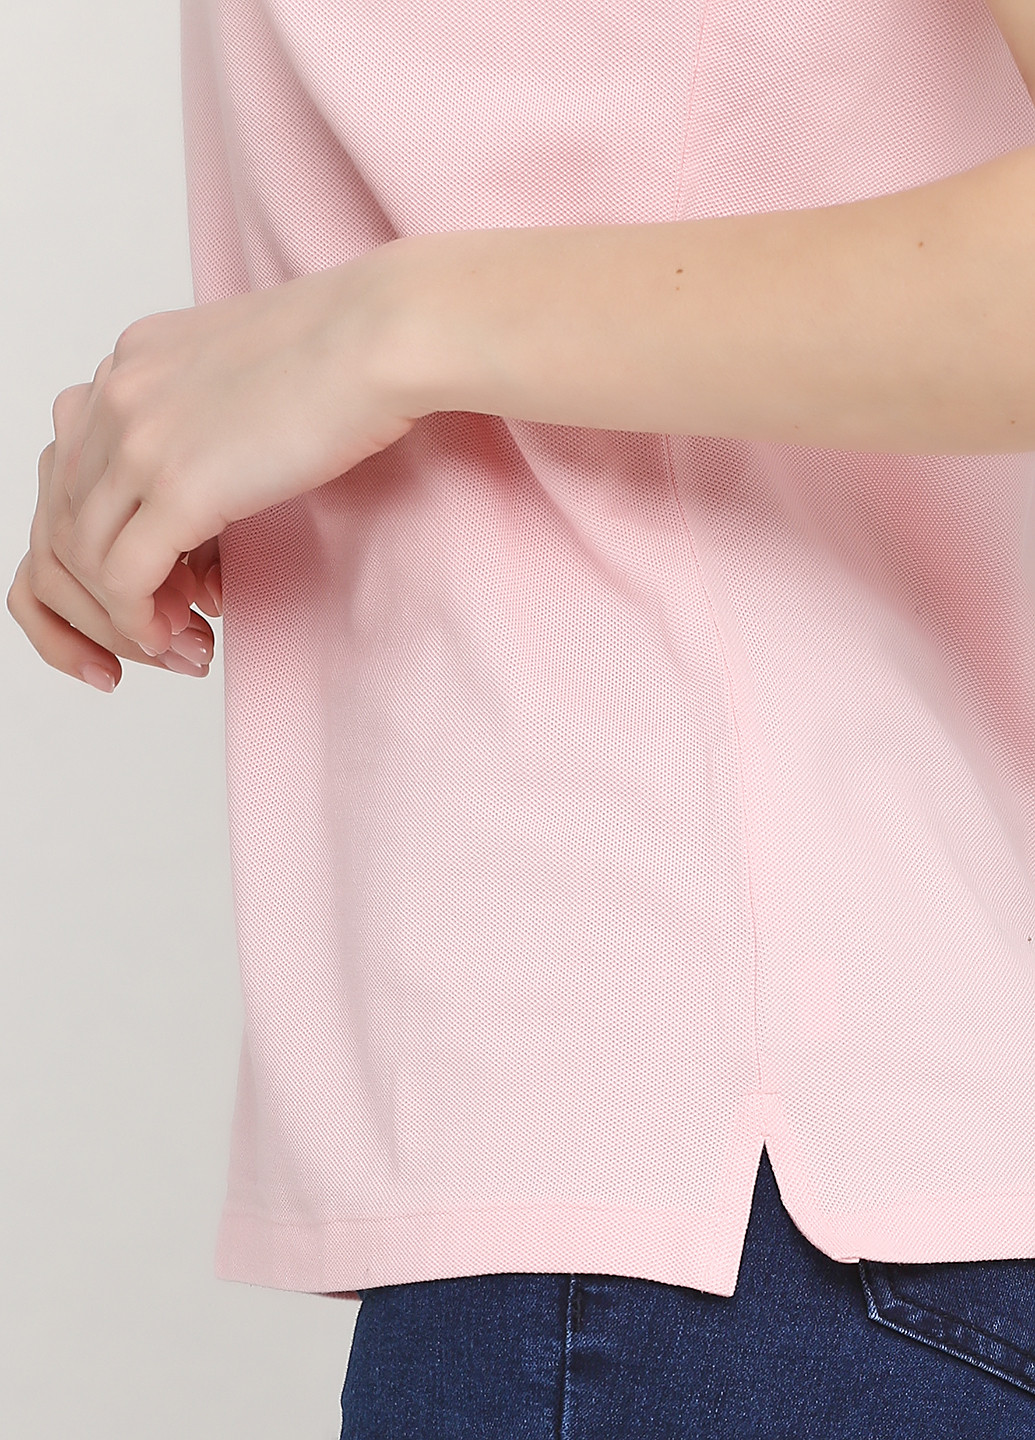 Світло-рожева літня футболка Ralph Lauren